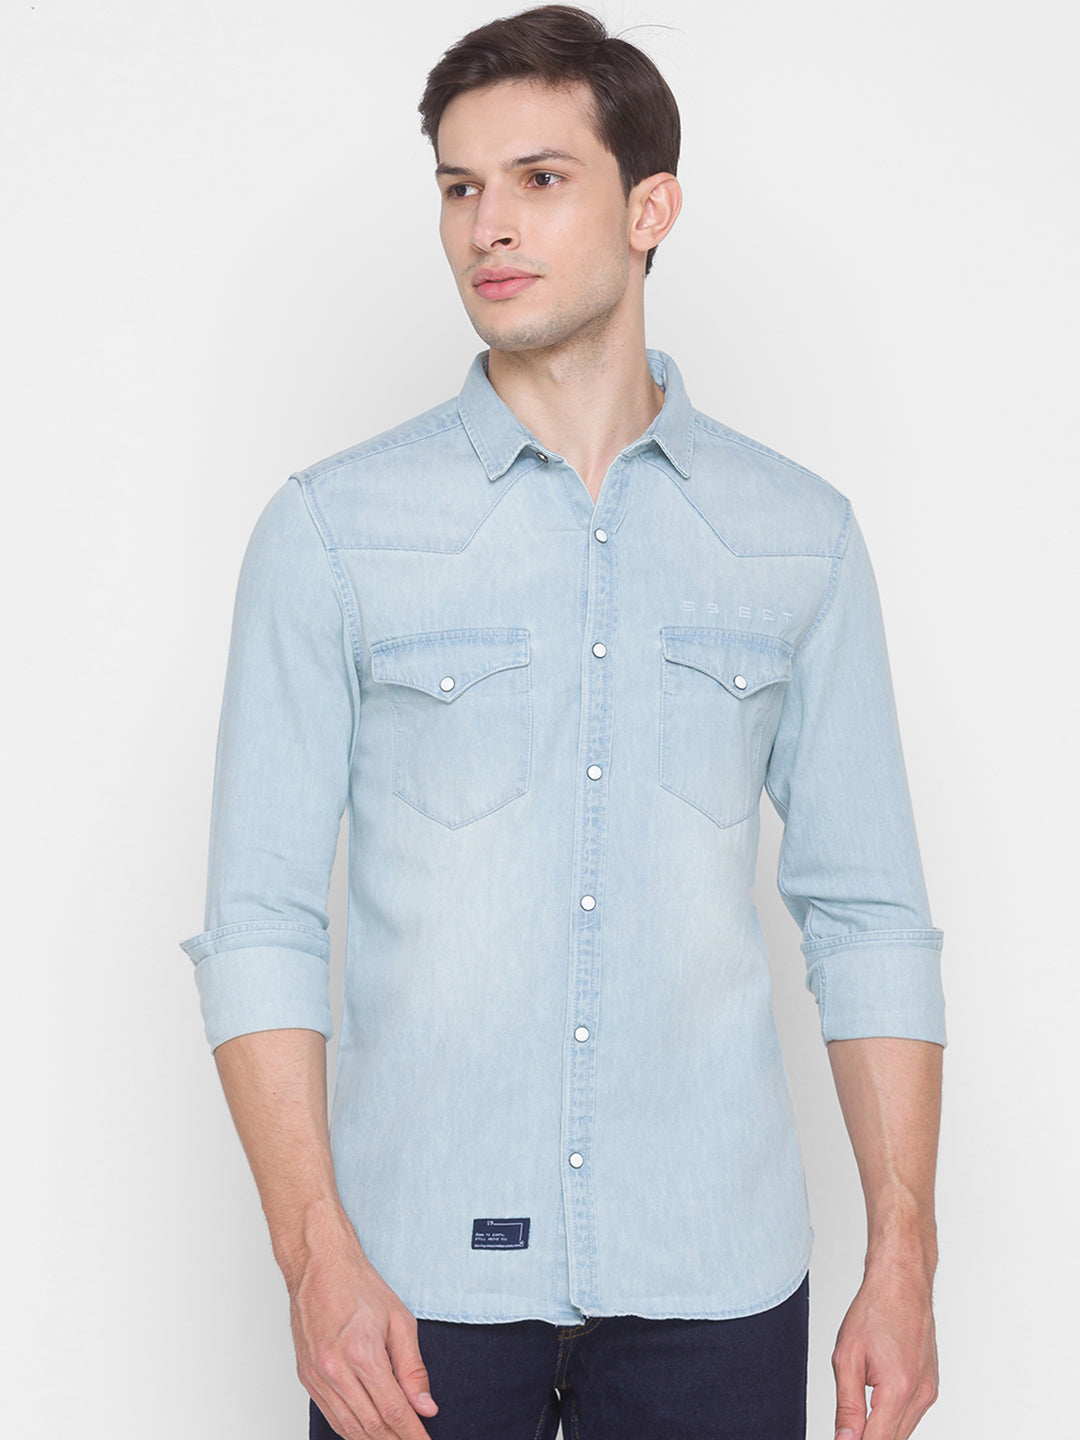 Spykar Light Blue Cotton Full Sleeve Denim Shirt For Men